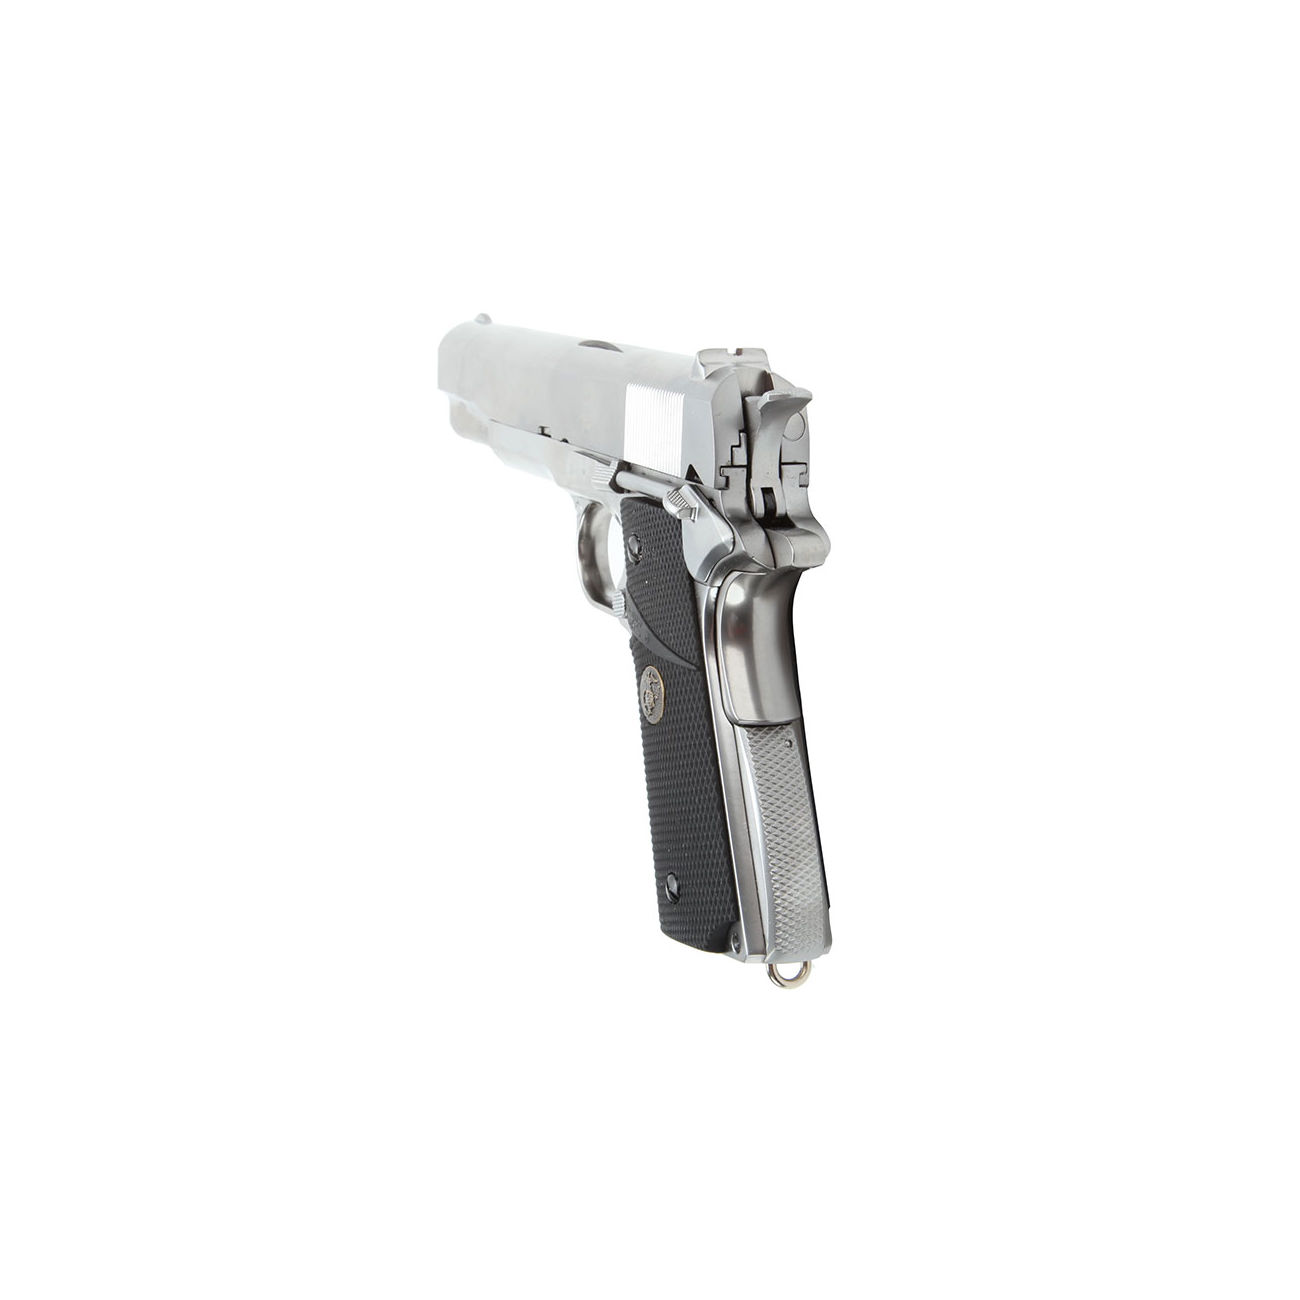 Wei-ETech M1911 Pro Grip Vollmetall GBB 6mm BB Satin-Chrome Bild 3